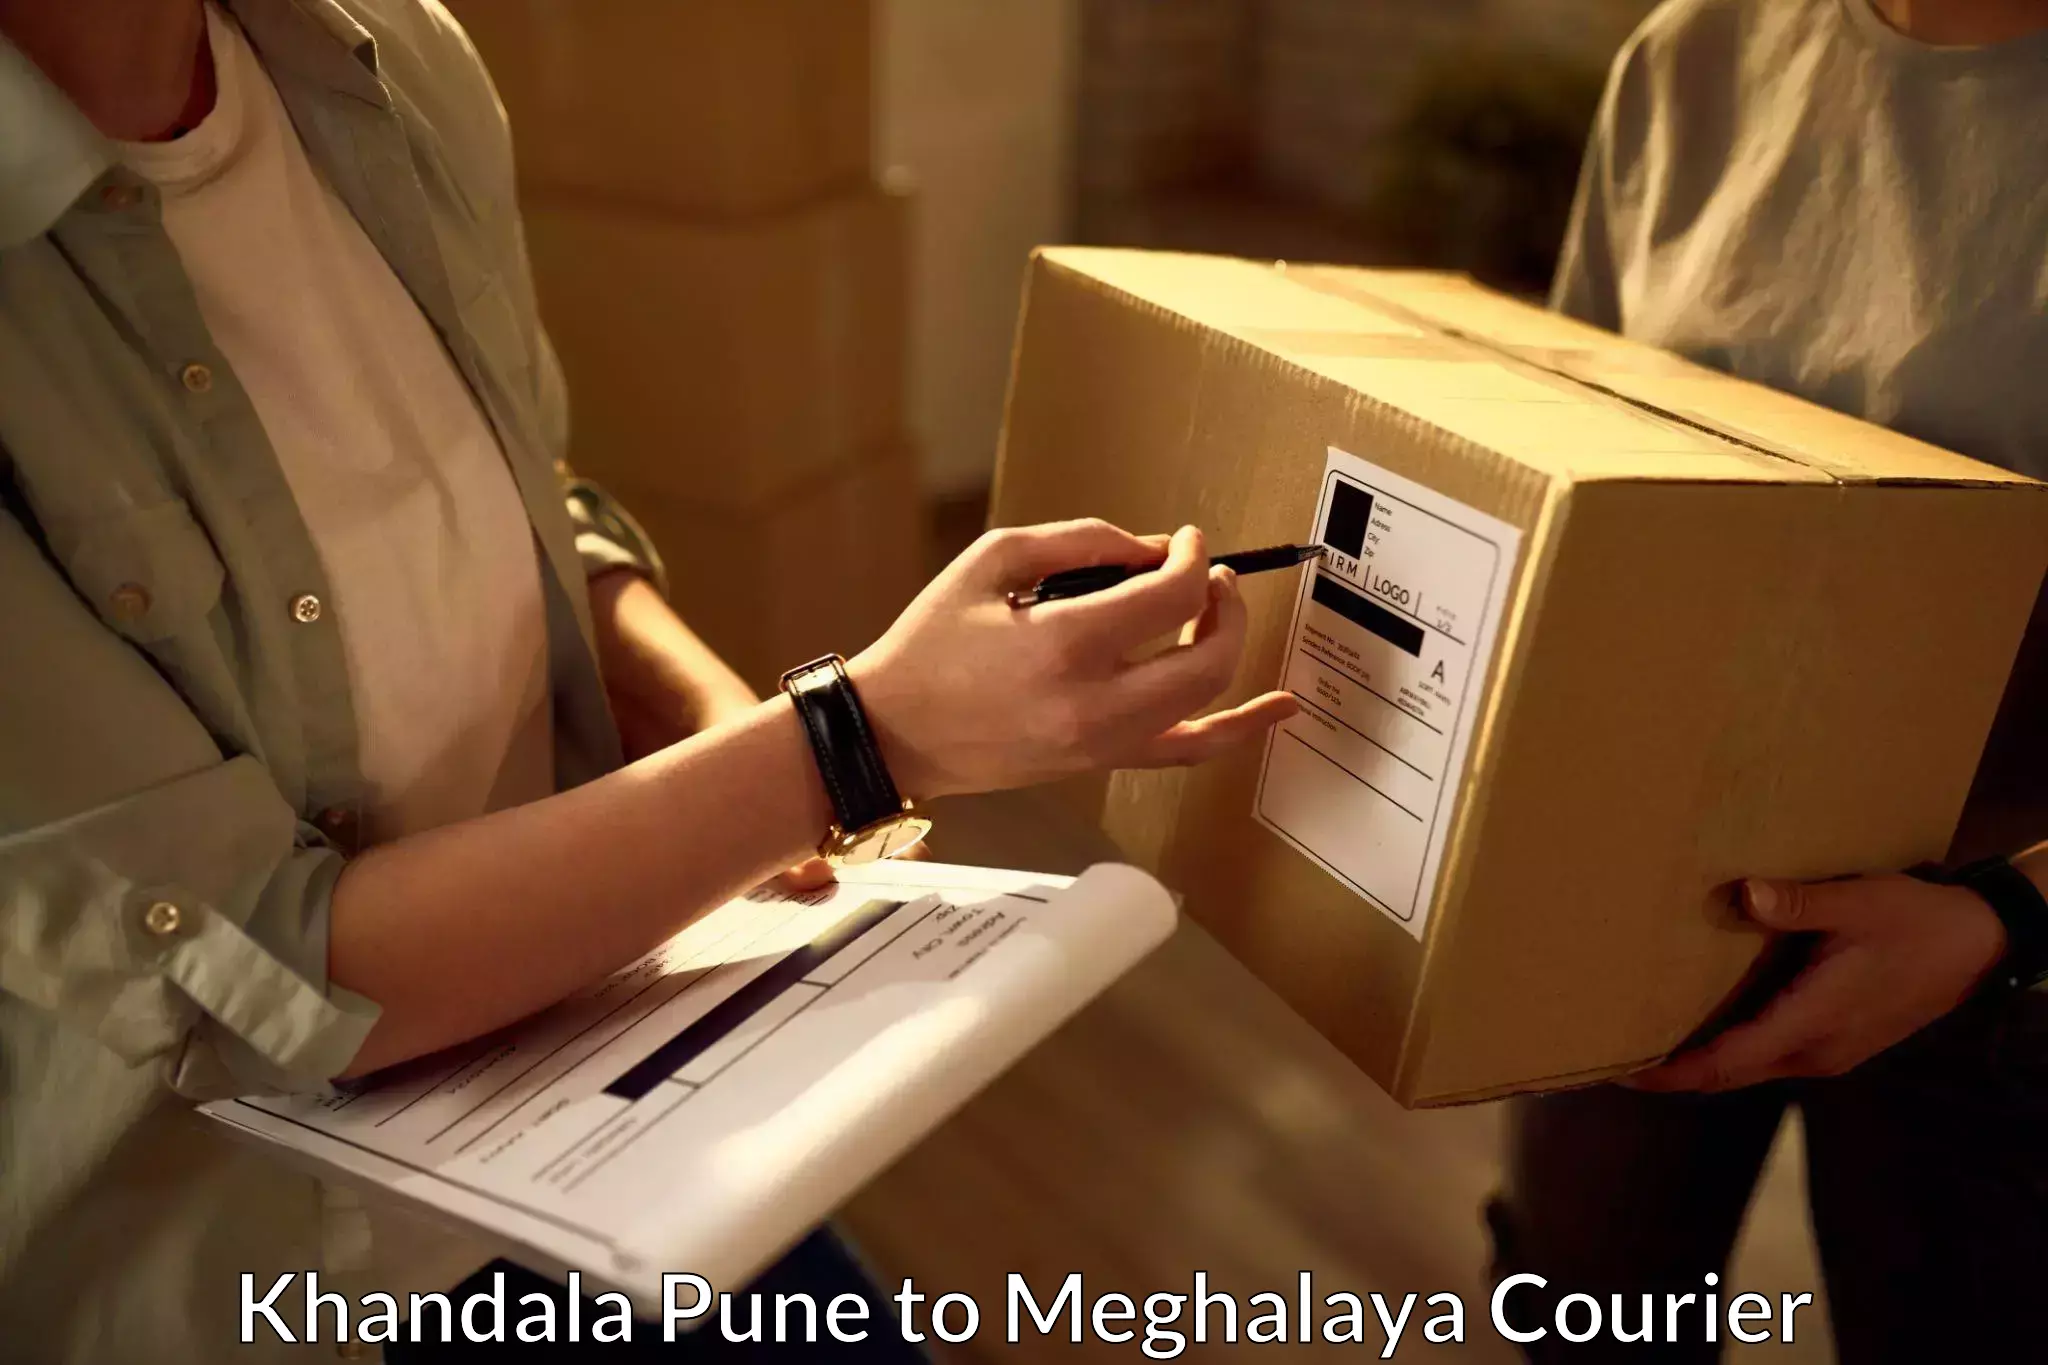 Specialized shipment handling Khandala Pune to Meghalaya